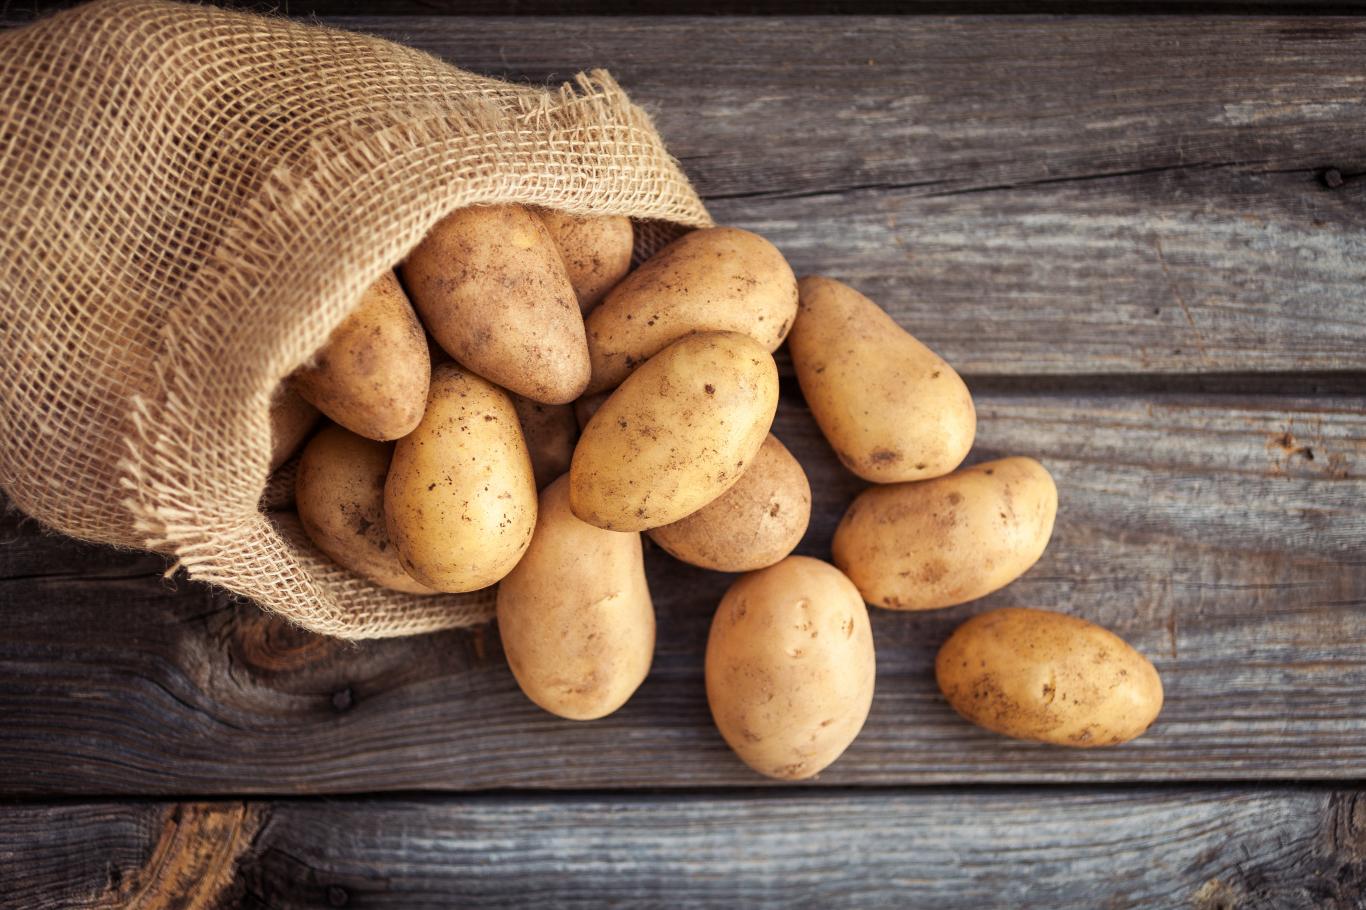 pâtes ou pommes de terre : lesquelles sont meilleures pour la santé ? ce médecin tranche